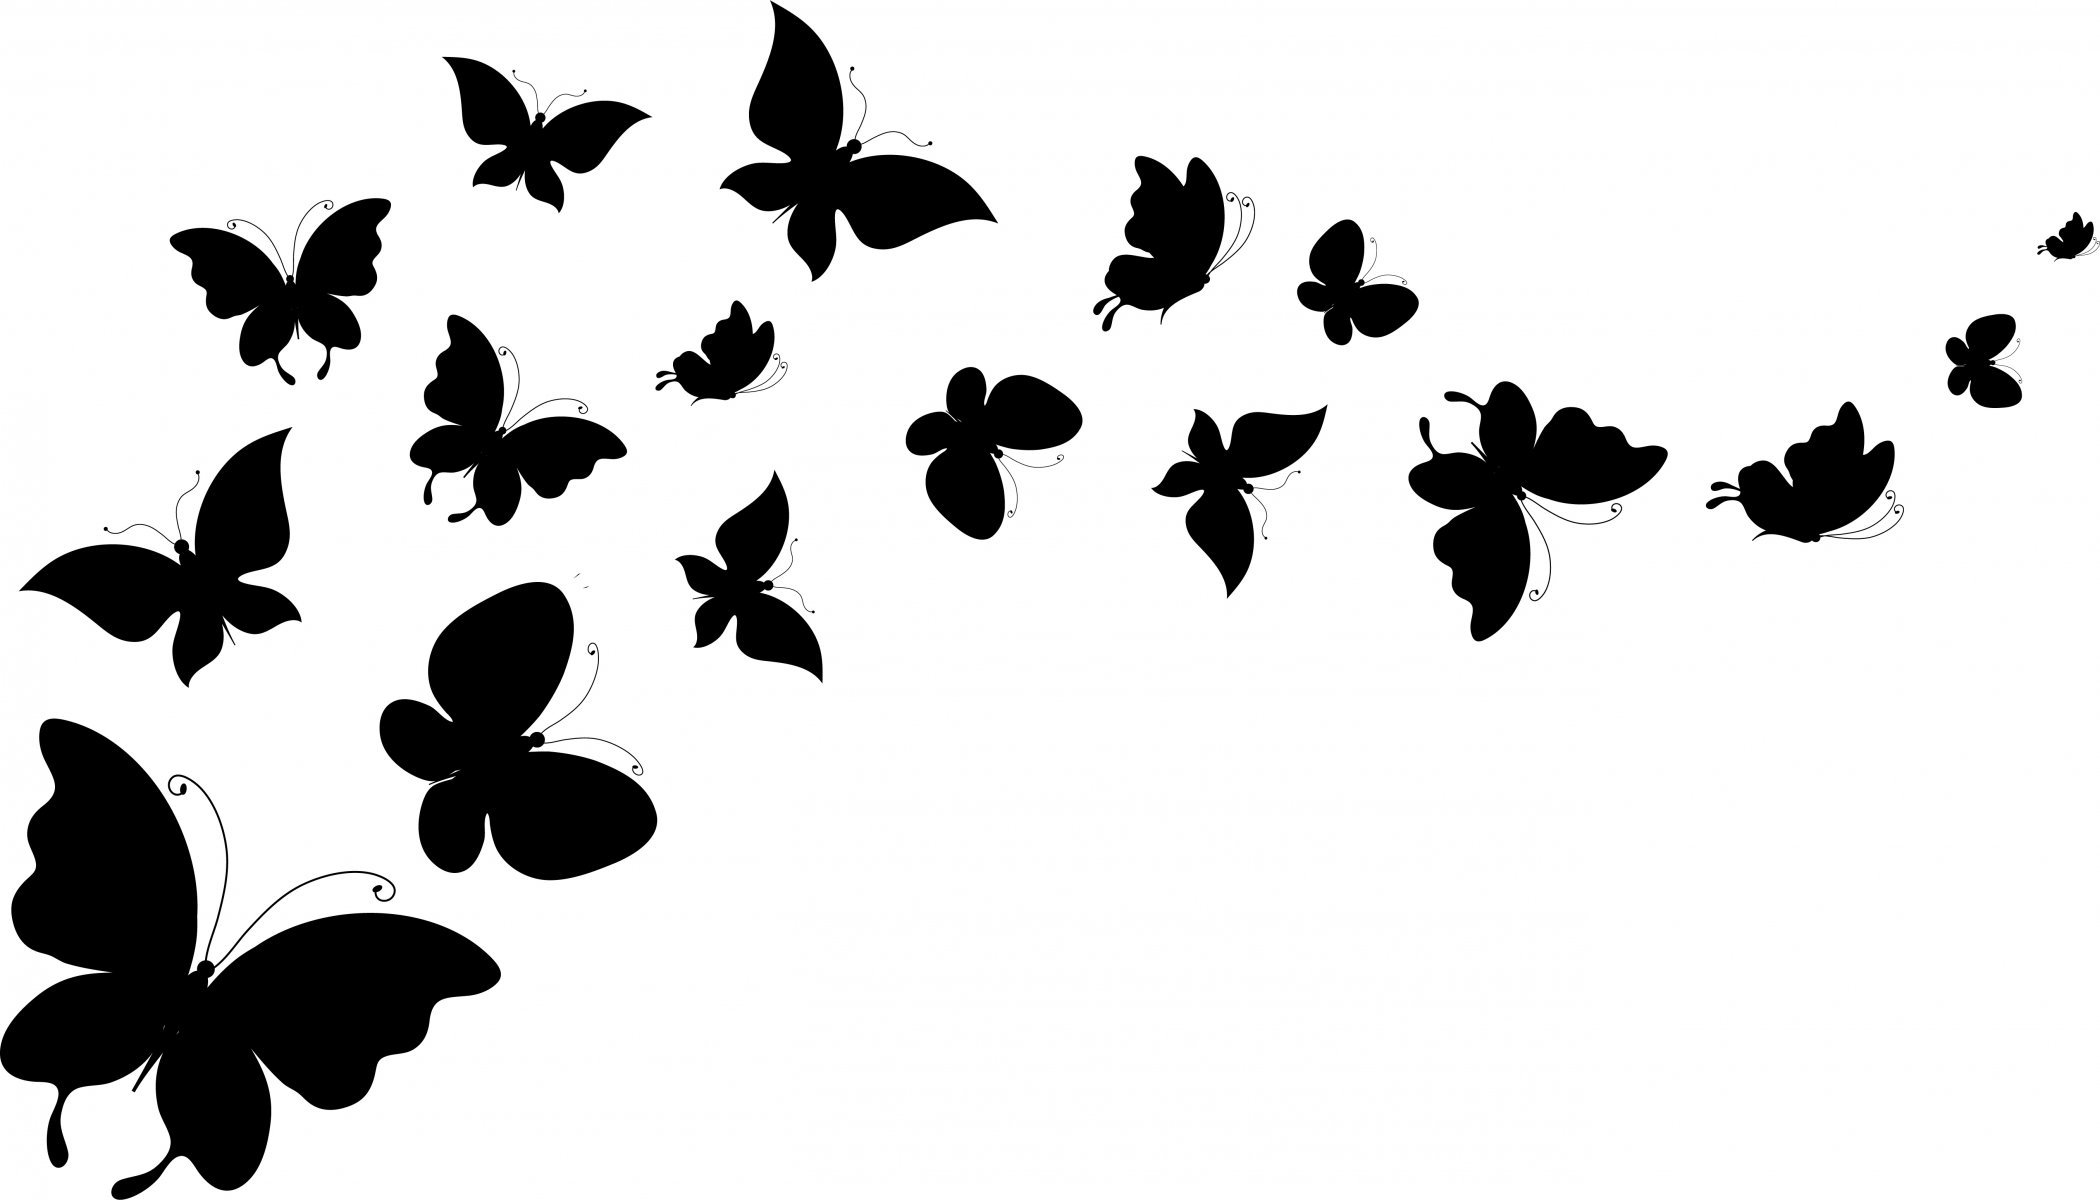 Butterfly black and white background 6 backgroundcheckall jpg